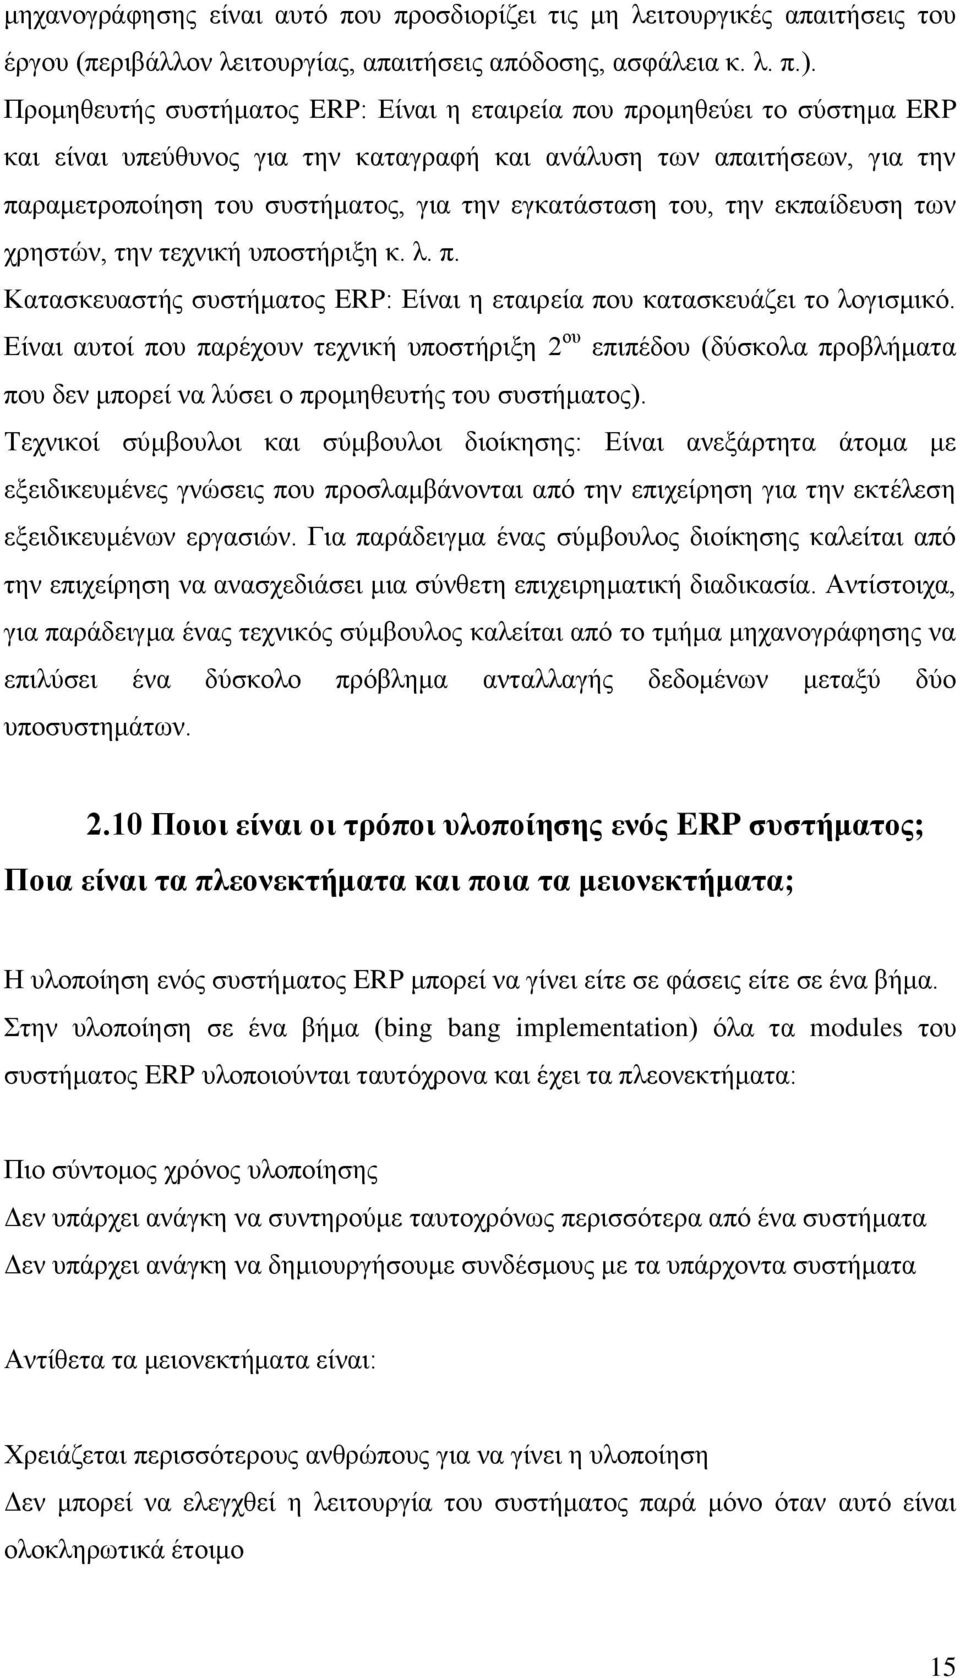 εγκατάσταση του, την εκπαίδευση των χρηστών, την τεχνική υποστήριξη κ. λ. π. Κατασκευαστής συστήματος ERP: Είναι η εταιρεία που κατασκευάζει το λογισμικό.